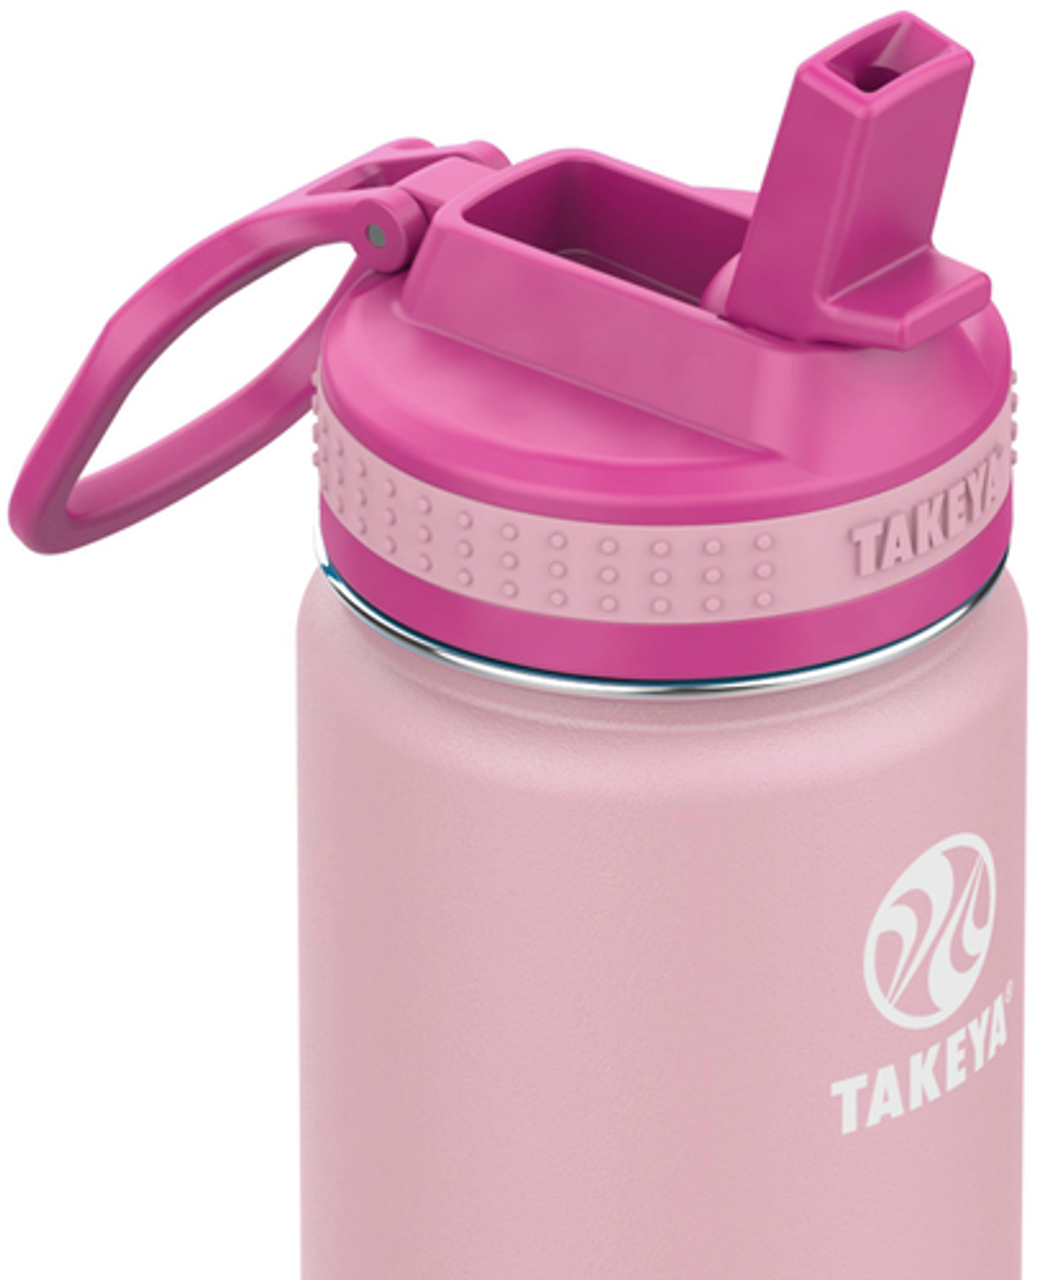 Takeya - Actives Kids 14oz Straw Bottle - Blush/Super Pink